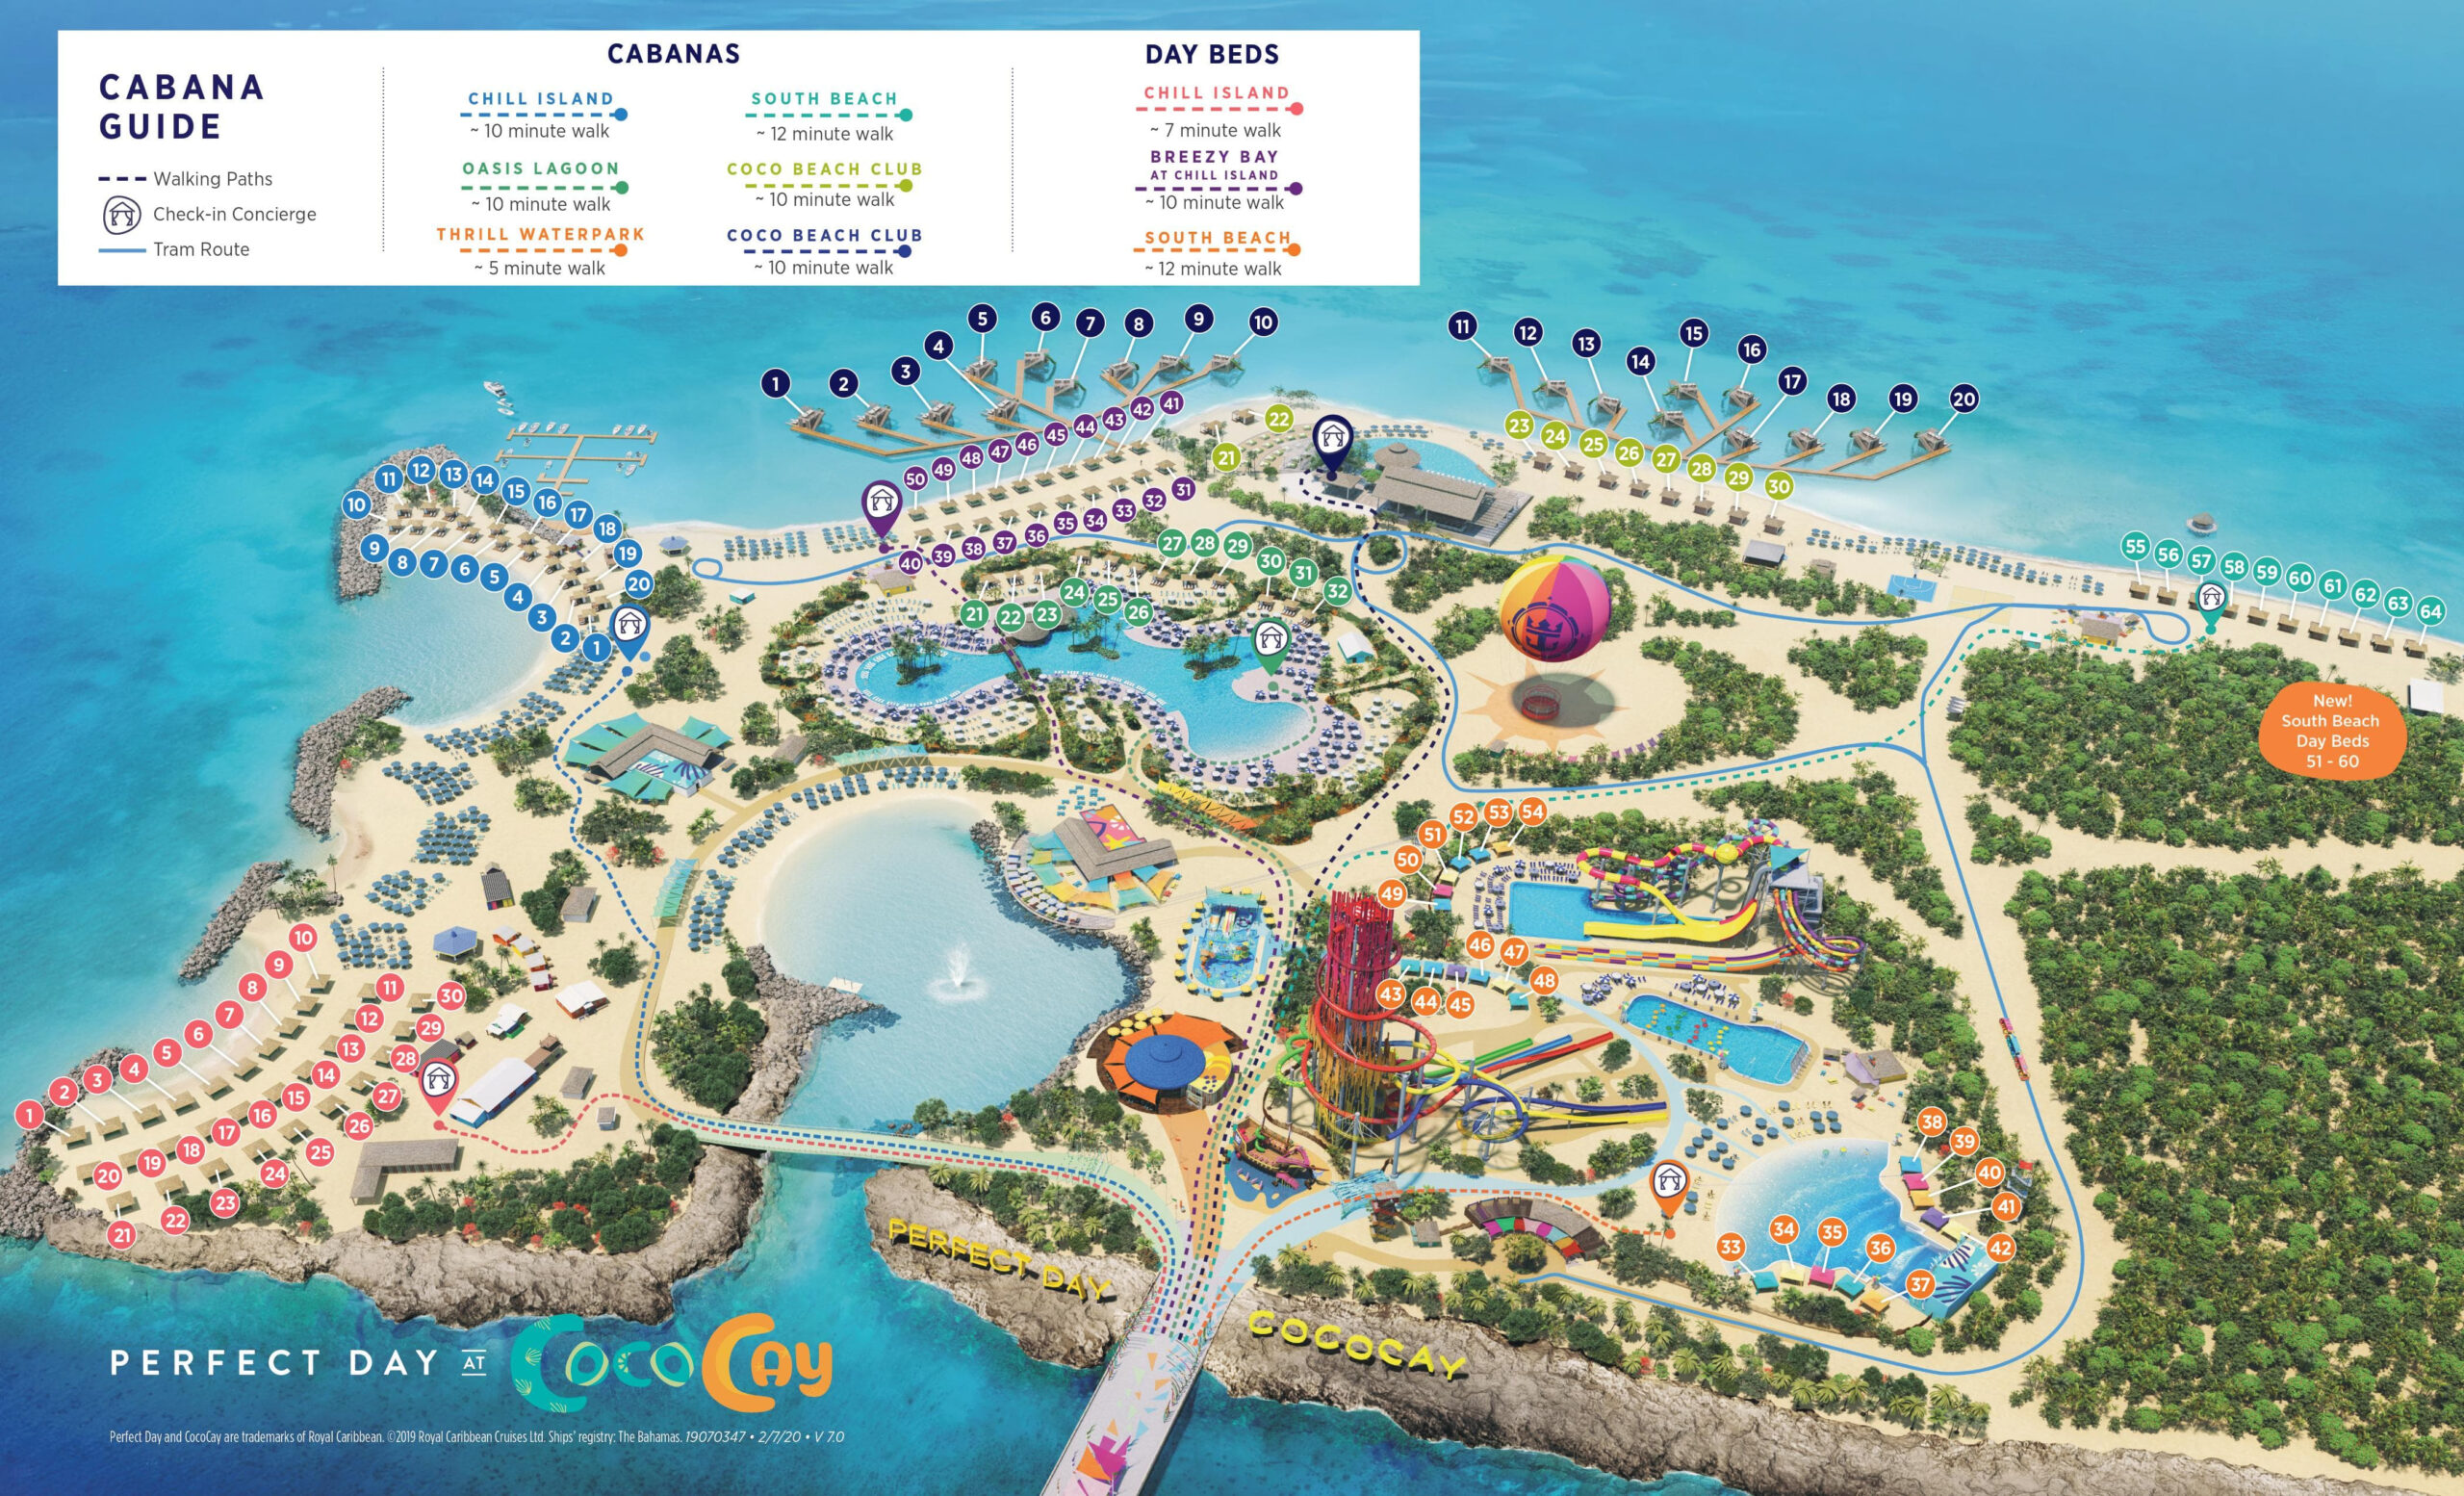 View The 2020 Perfect Day At CocoCay Cabana Map Royal Caribbean Blog